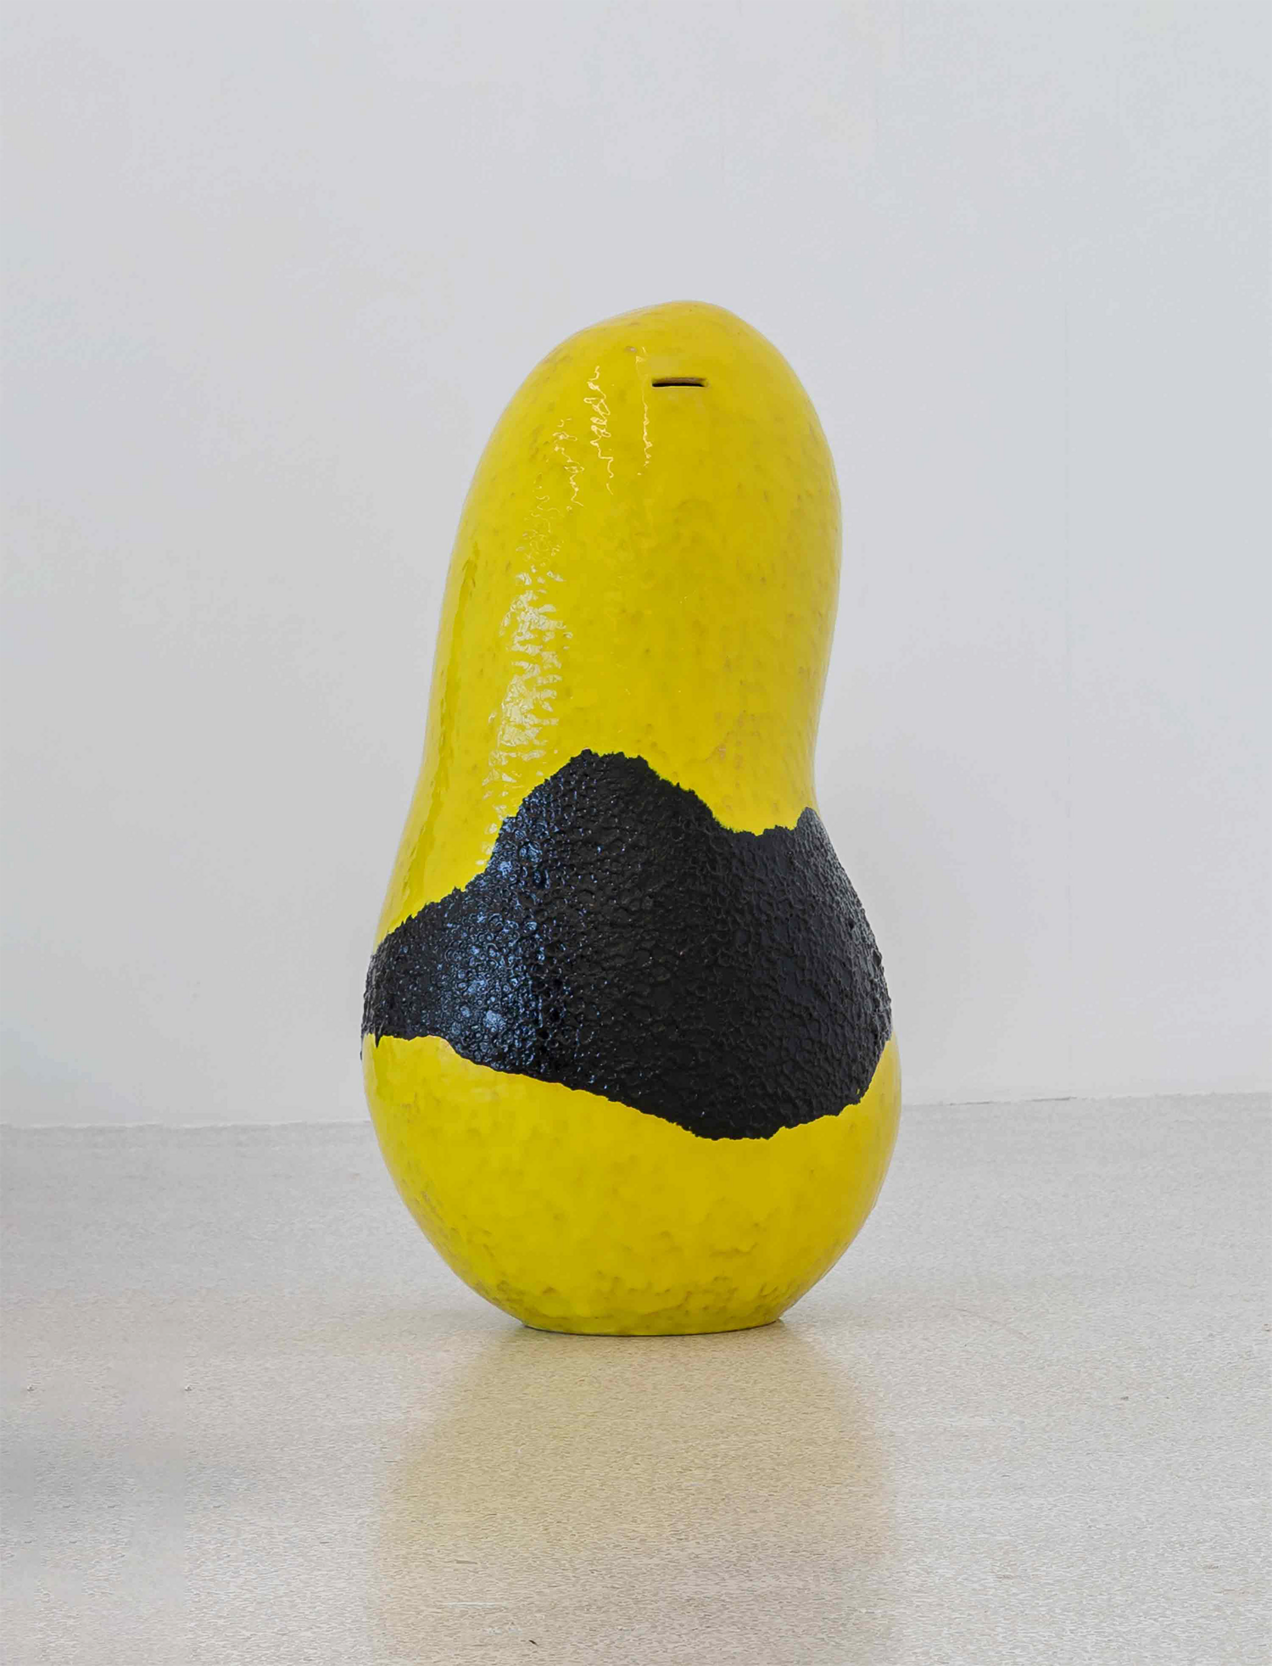 Gelb-schwarze Spardose aus Keramik mit grober Oberflächenstruktur, die auf dem Boden steht